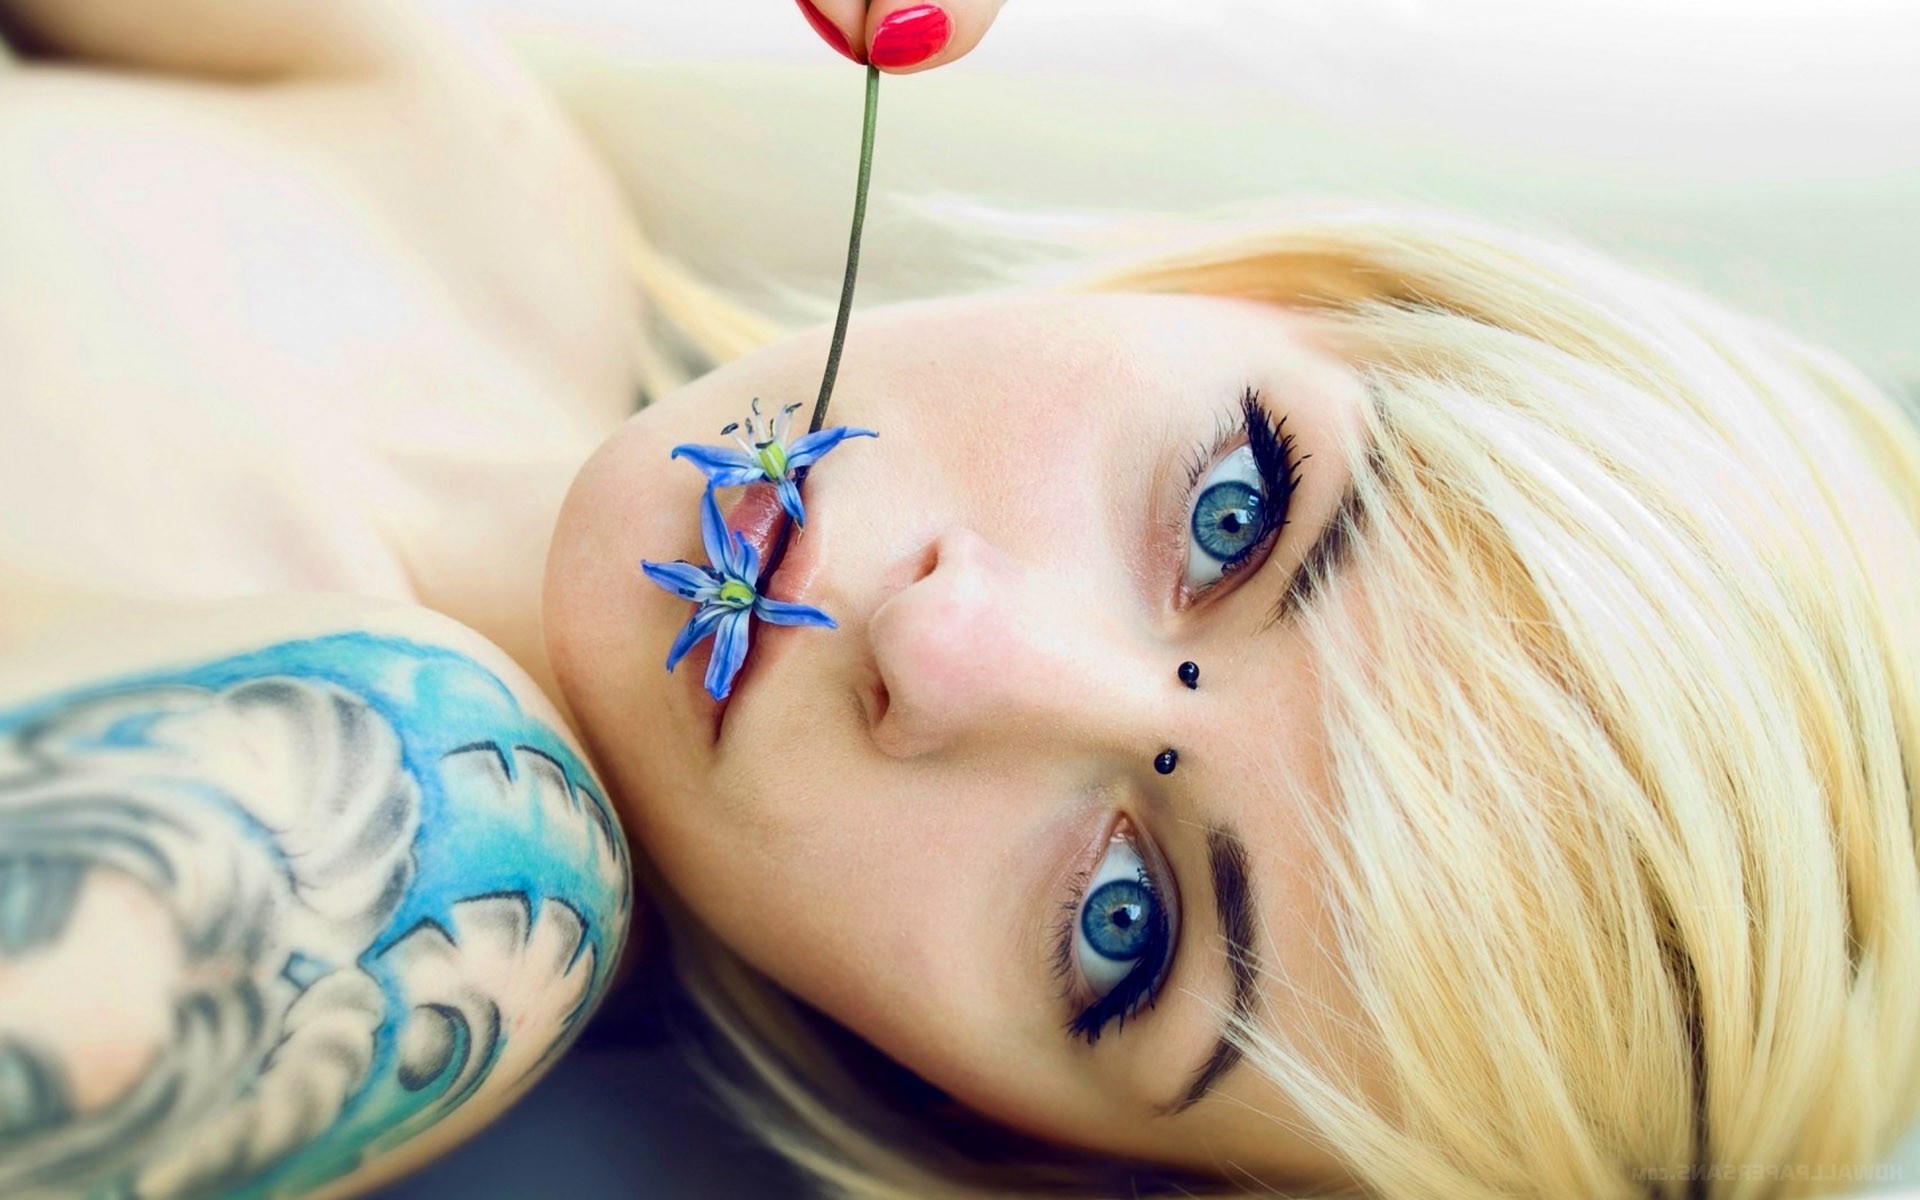 women, Tattoos, Blonde, Blue Eyes, Tattoos Women, Piercing, Flower In Mouth, Flowers, Piercing Eyes Wallpaper